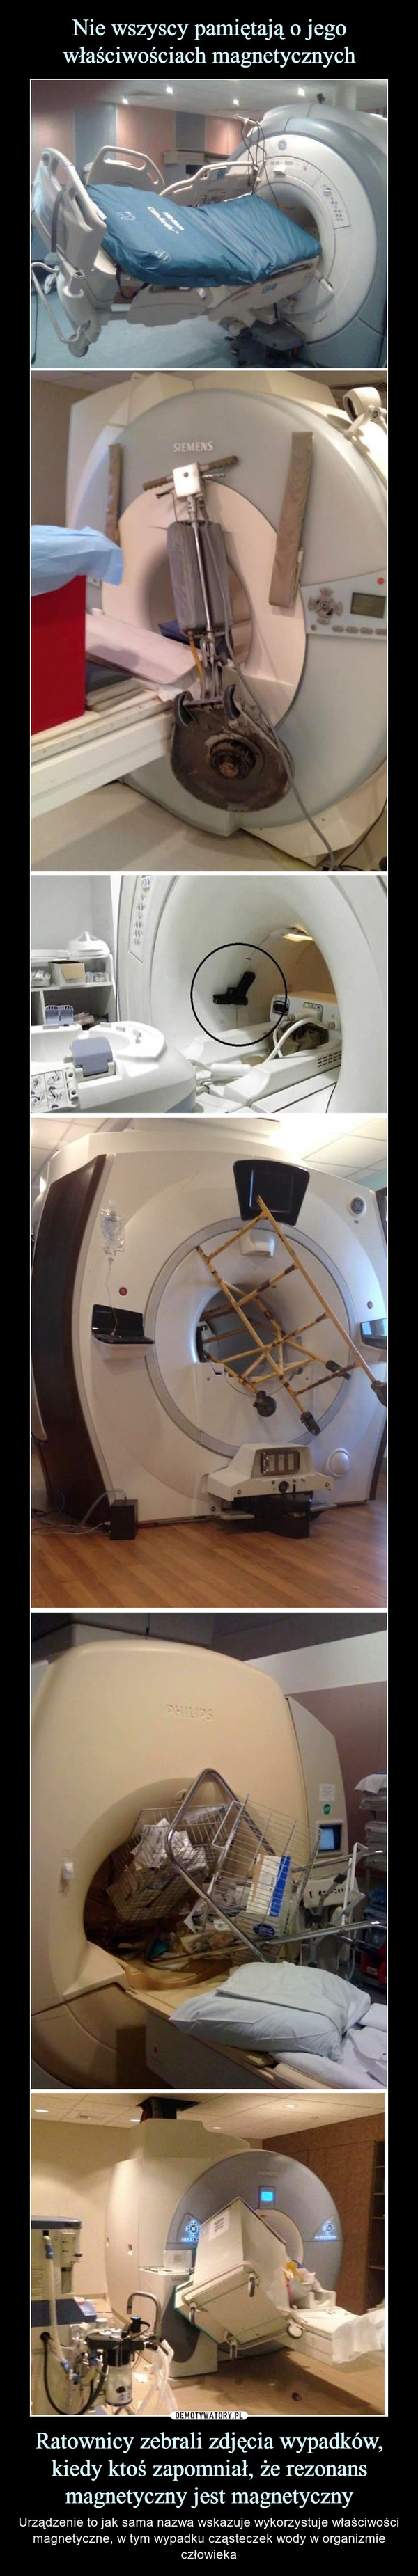 Ratownicy zebrali zdjęcia wypadków, kiedy ktoś zapomniał, że rezonans magnetyczny jest magnetyczny – Urządzenie to jak sama nazwa wskazuje wykorzystuje właściwości magnetyczne, w tym wypadku cząsteczek wody w organizmie człowieka 